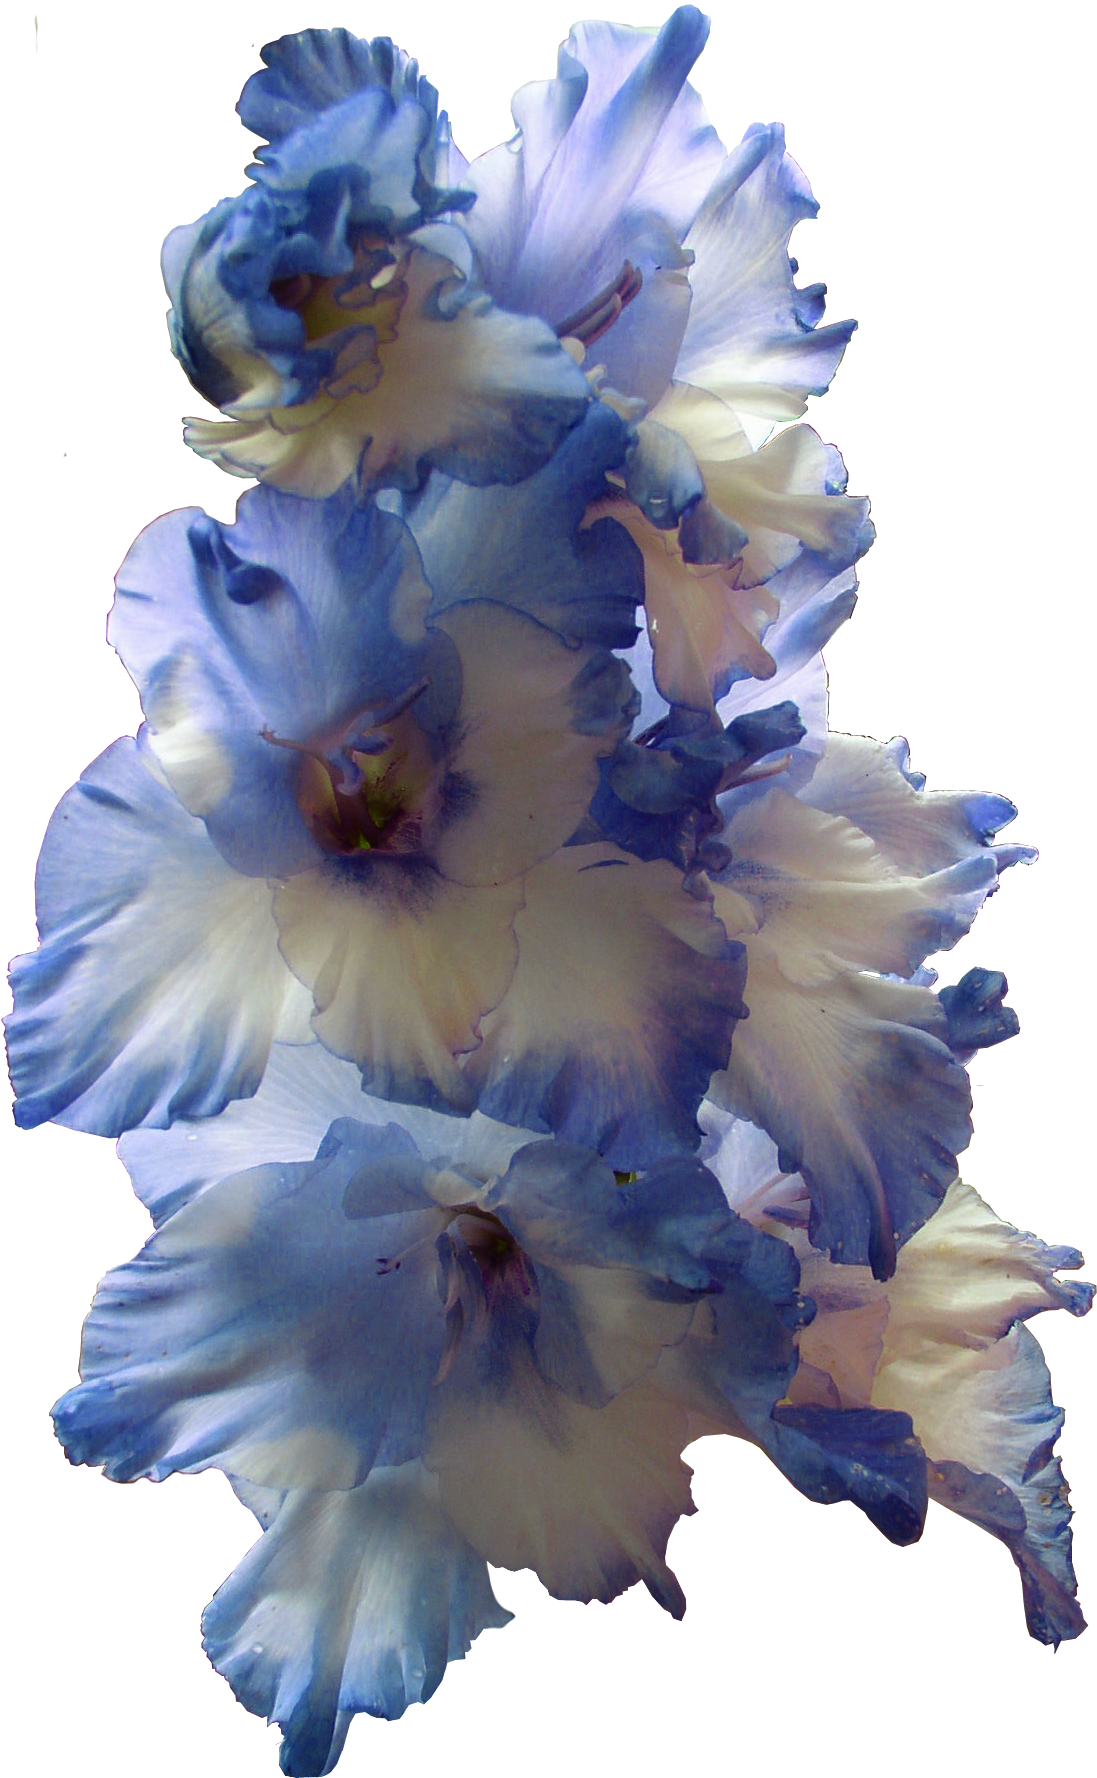 Gladiolus 투명한 이미지